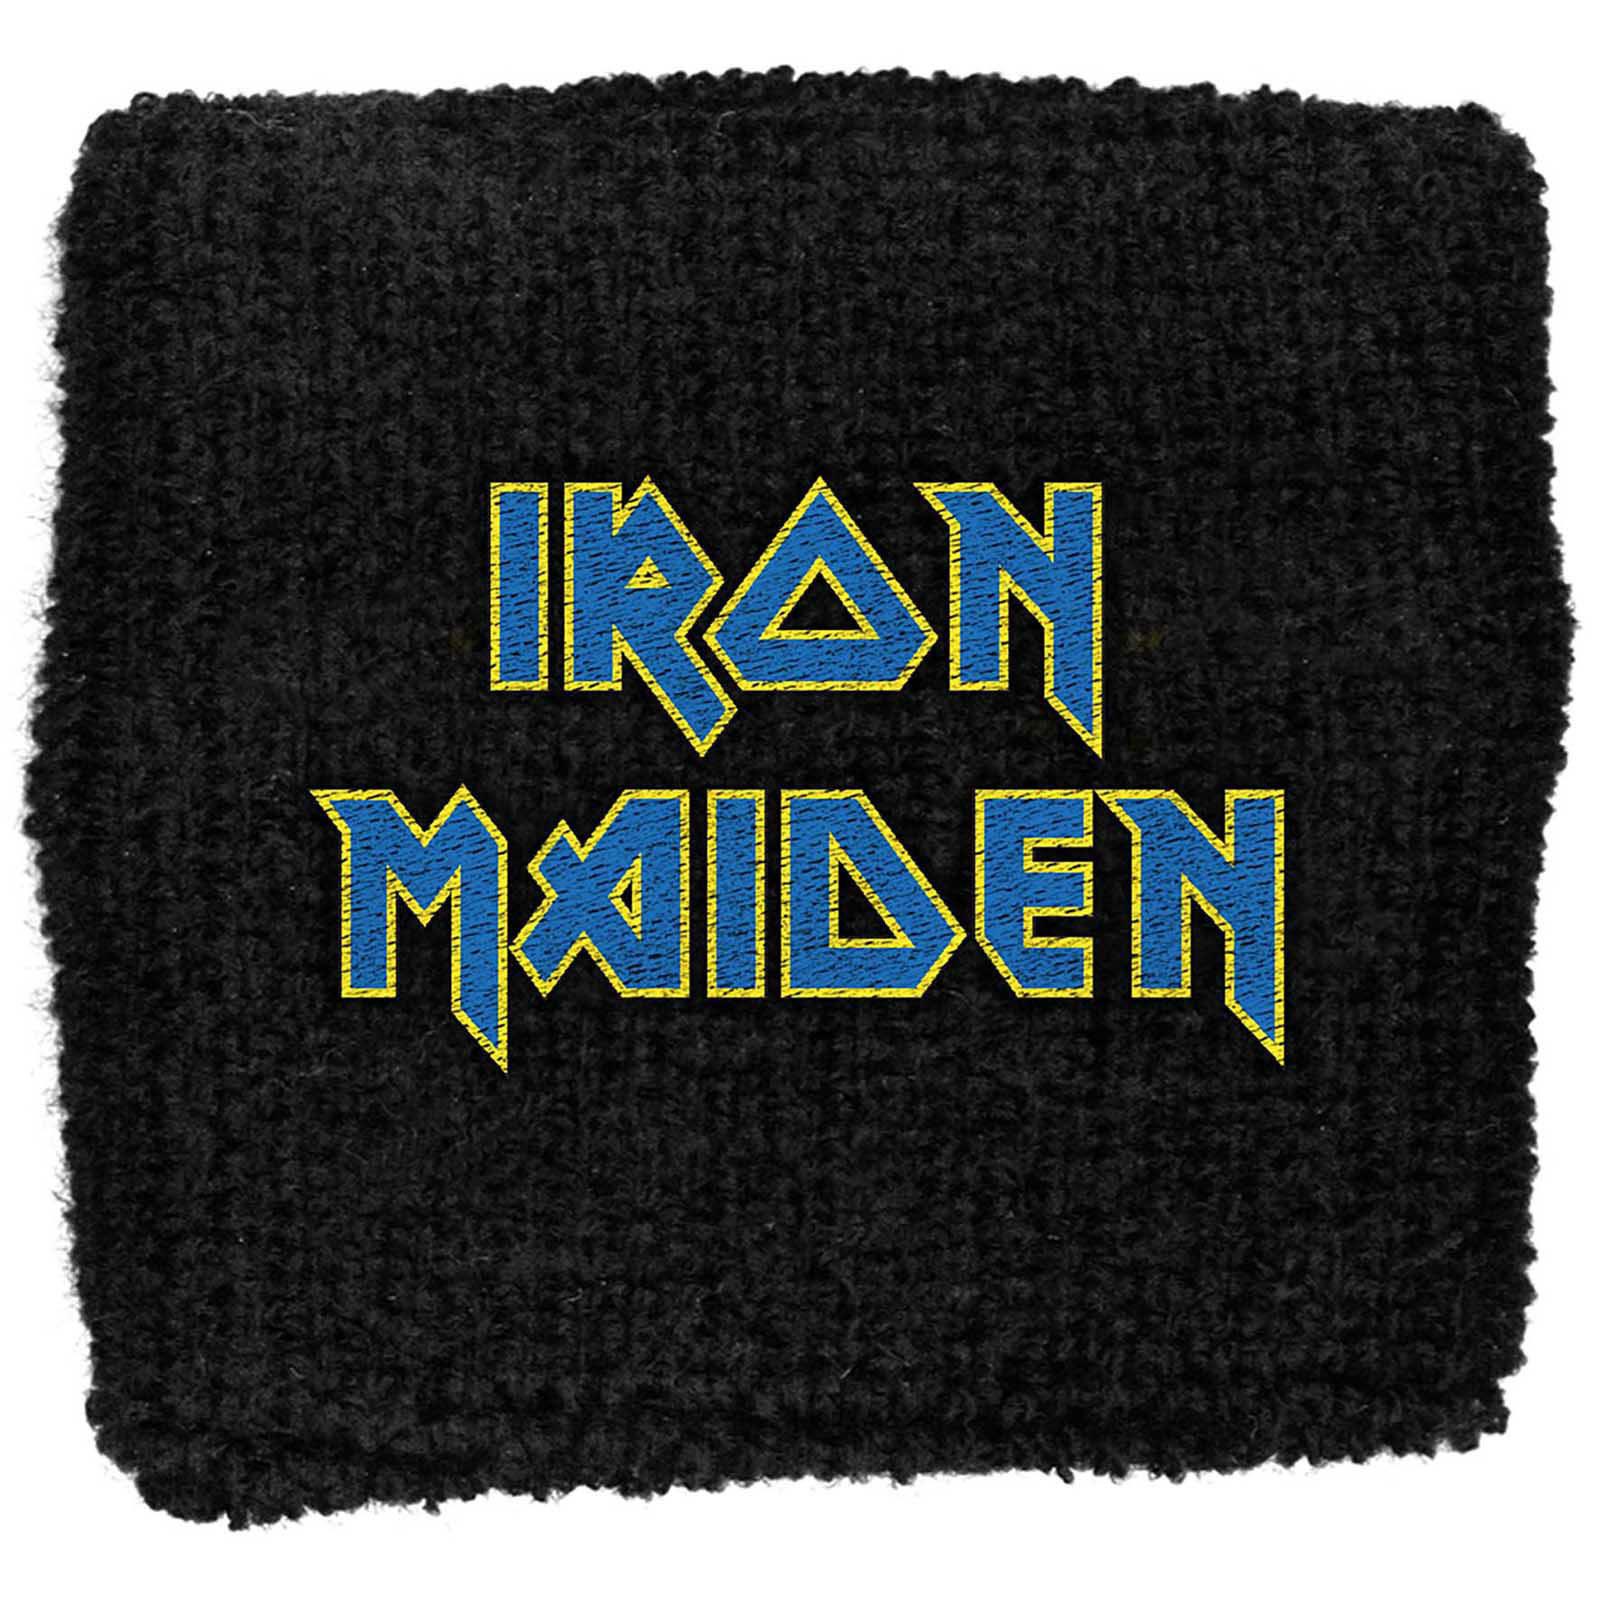 (アイアン・メイデン) Iron Maiden オフィシャル商品 Flight 666 リストバンド ロゴ 布地 スエットバン..